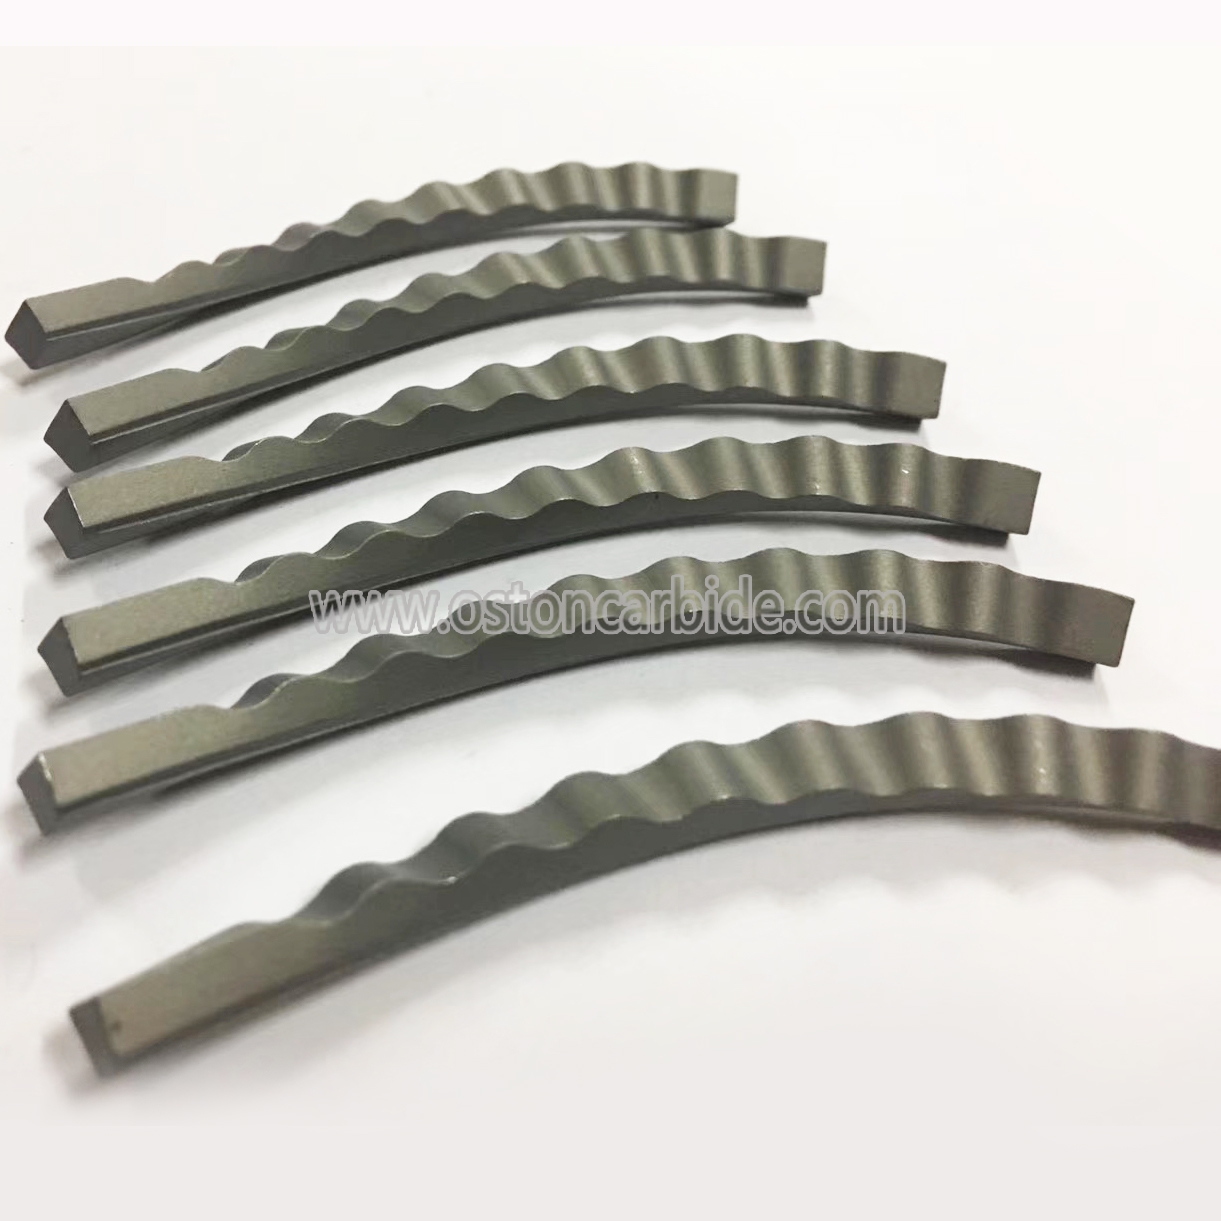 Tungsten Carbide Spiral Bars 